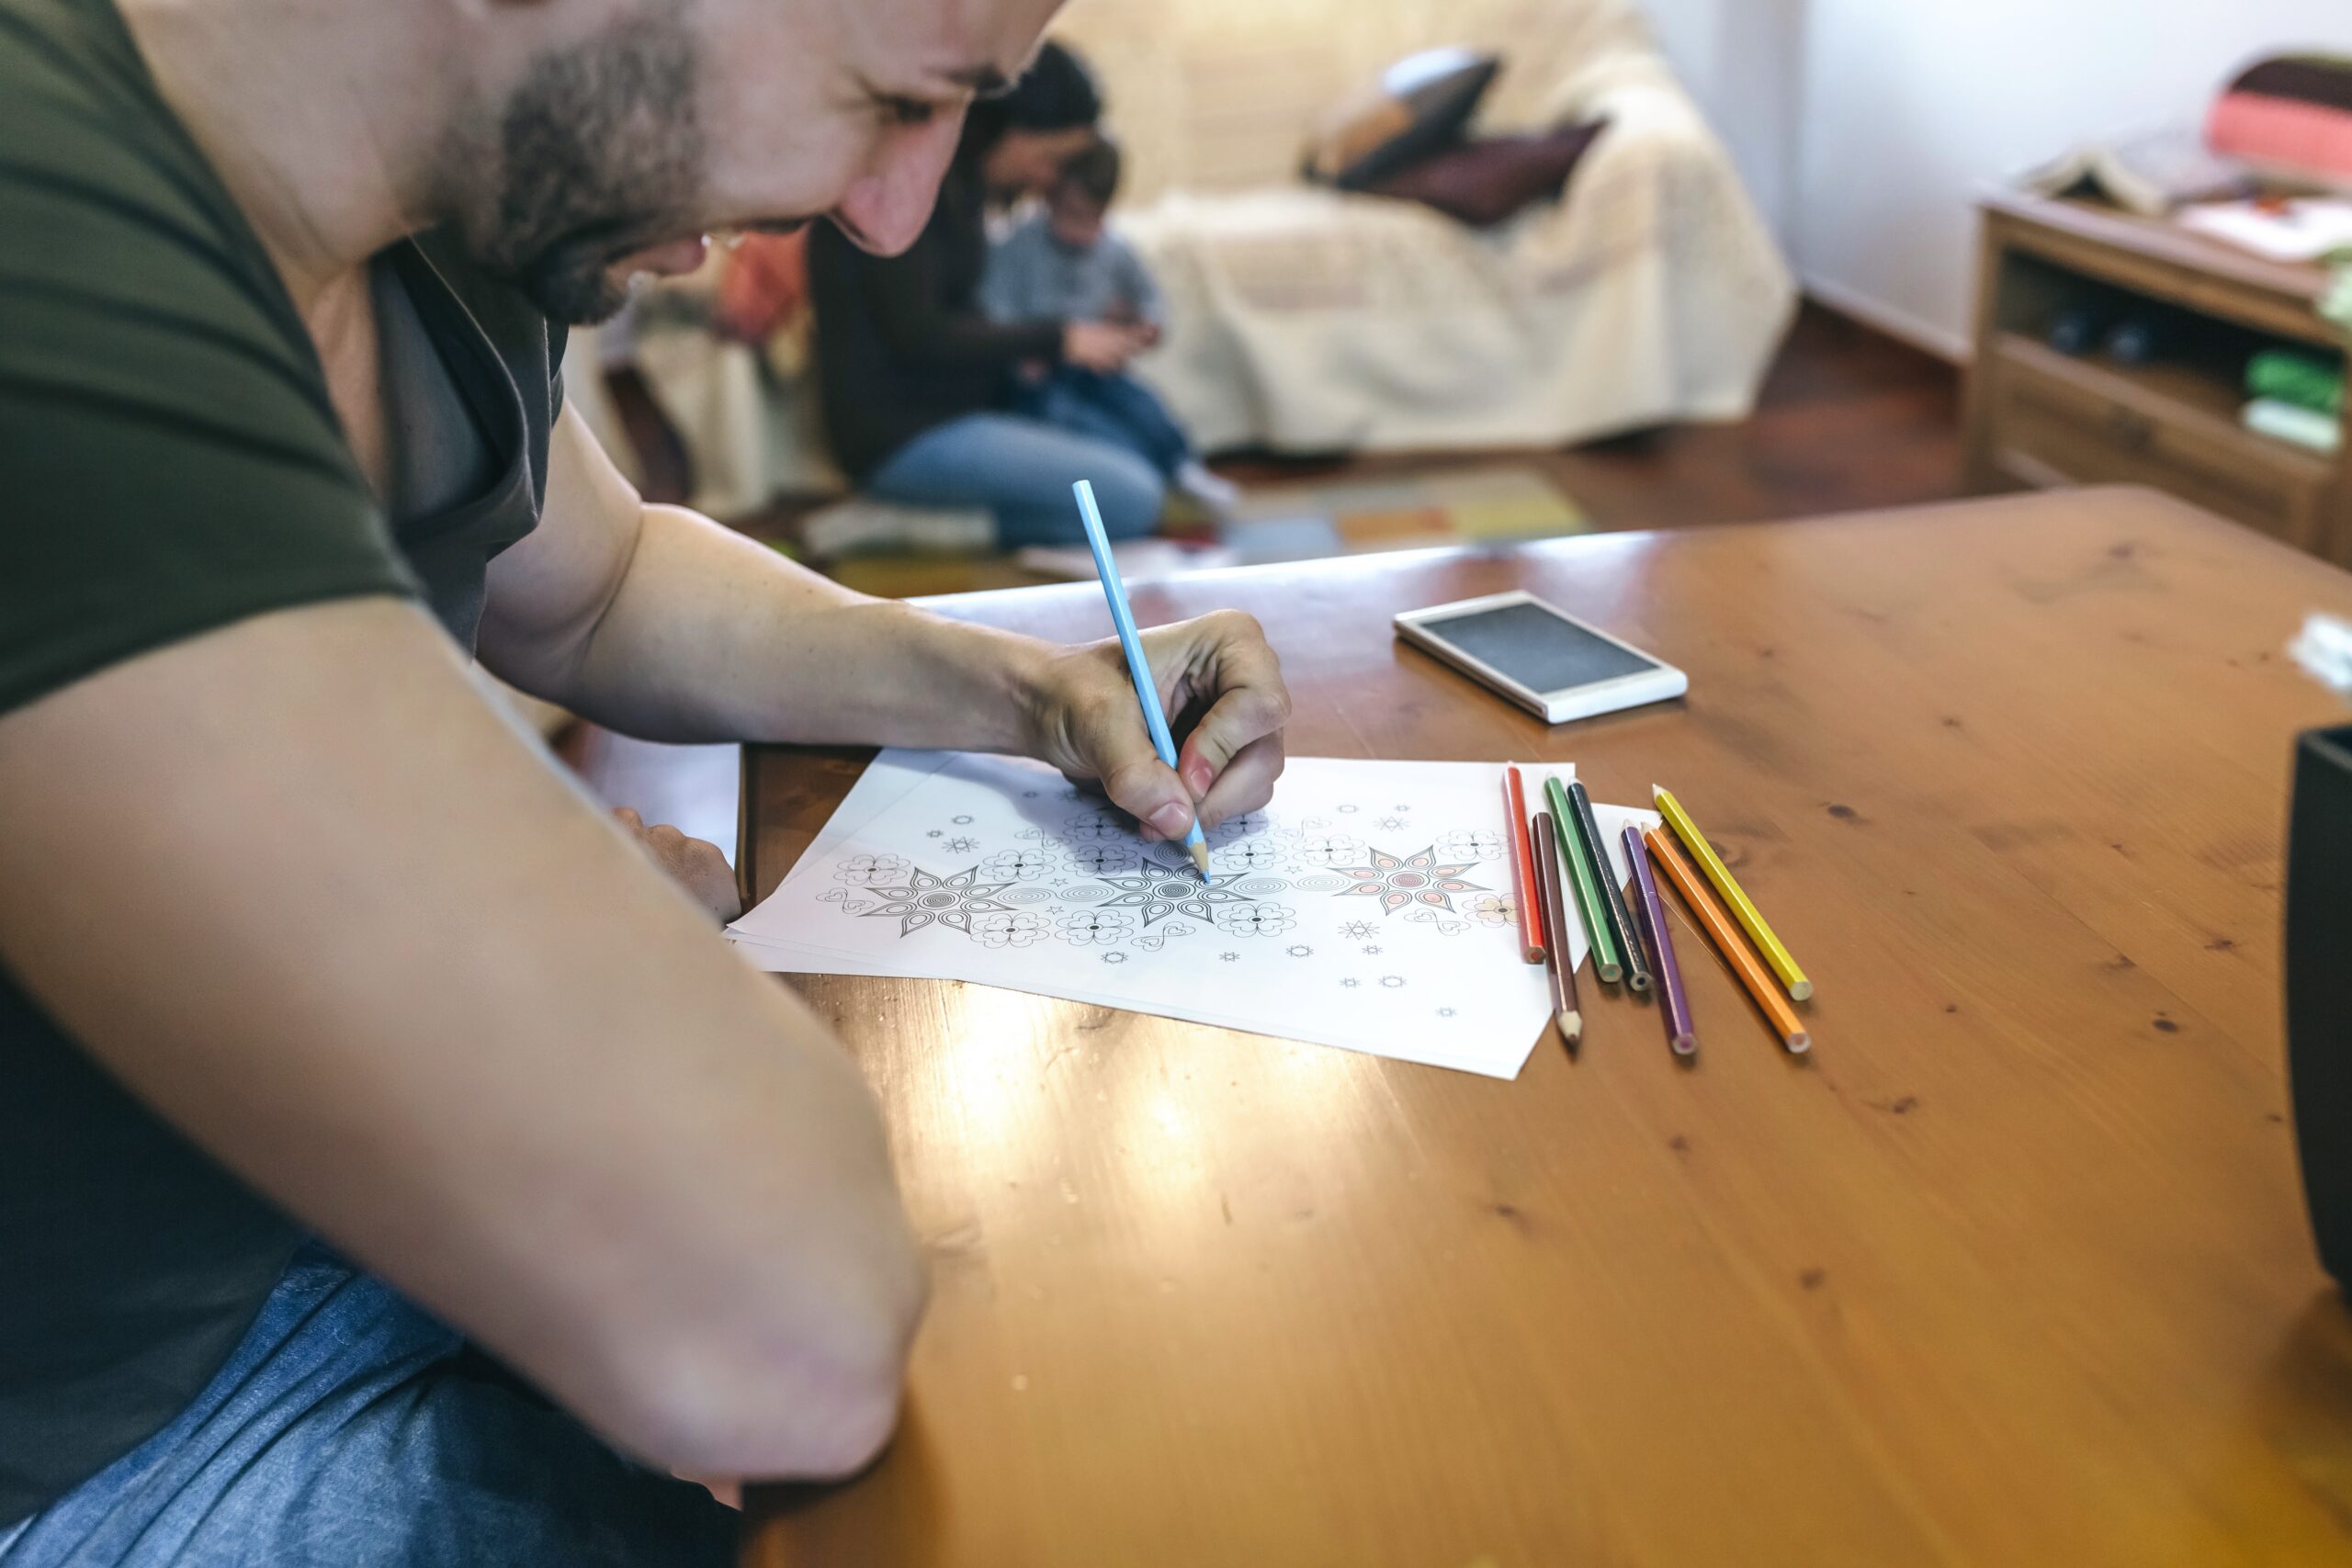 Young man coloring mandalas